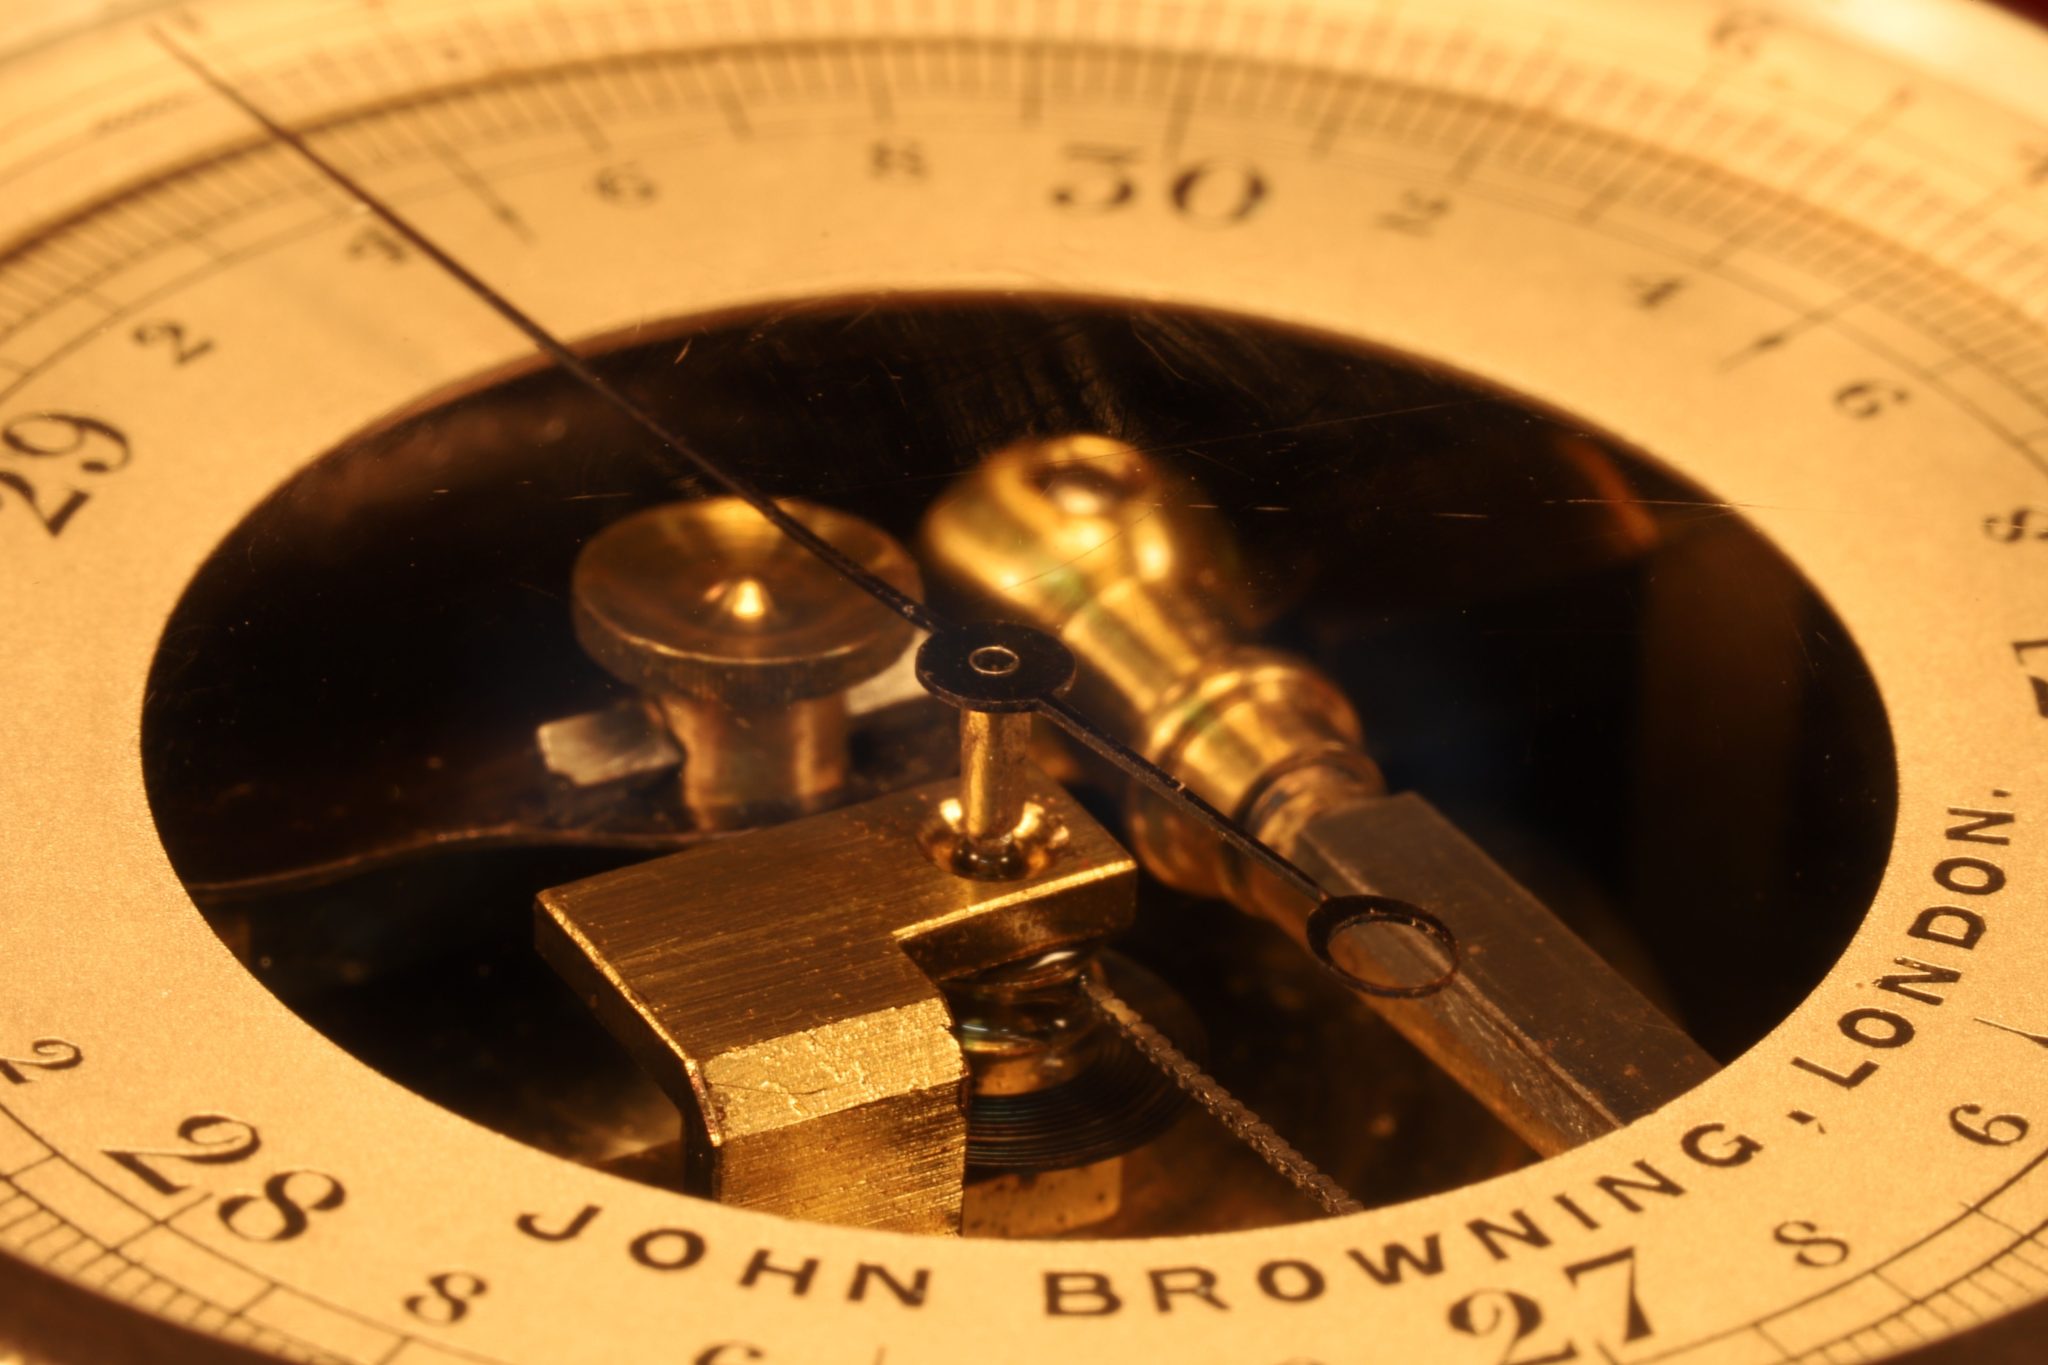 Image of John Browning Pocket Barometer c1863